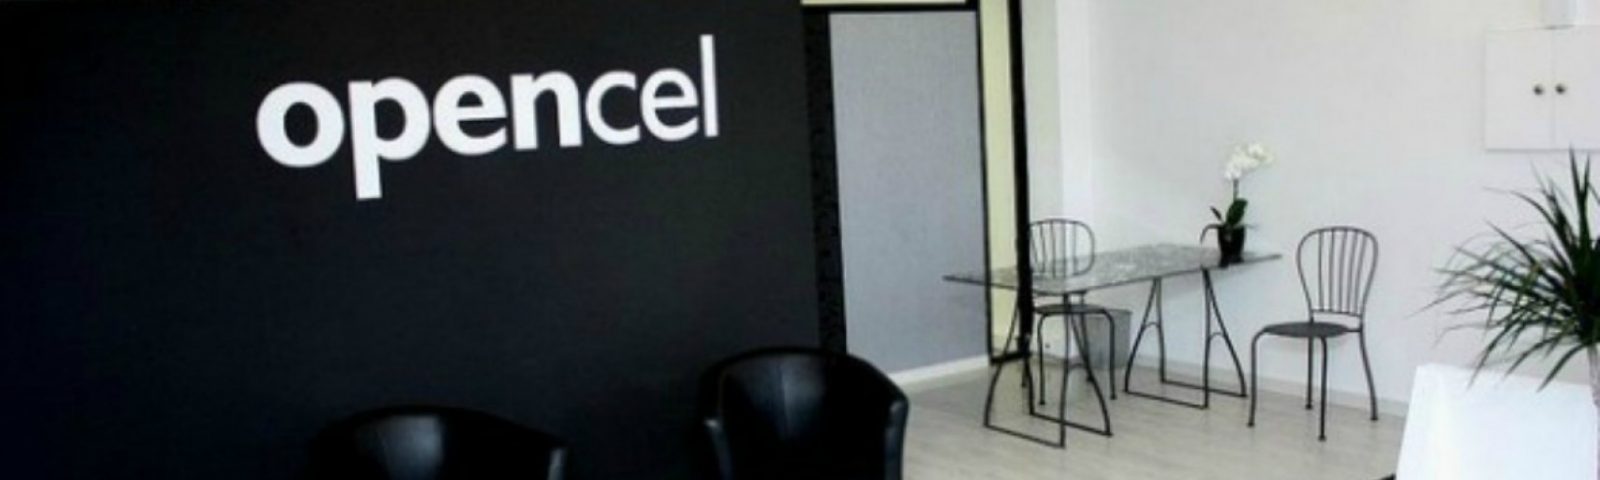 Opencel vai atingir 400 unidades na Península Ibérica